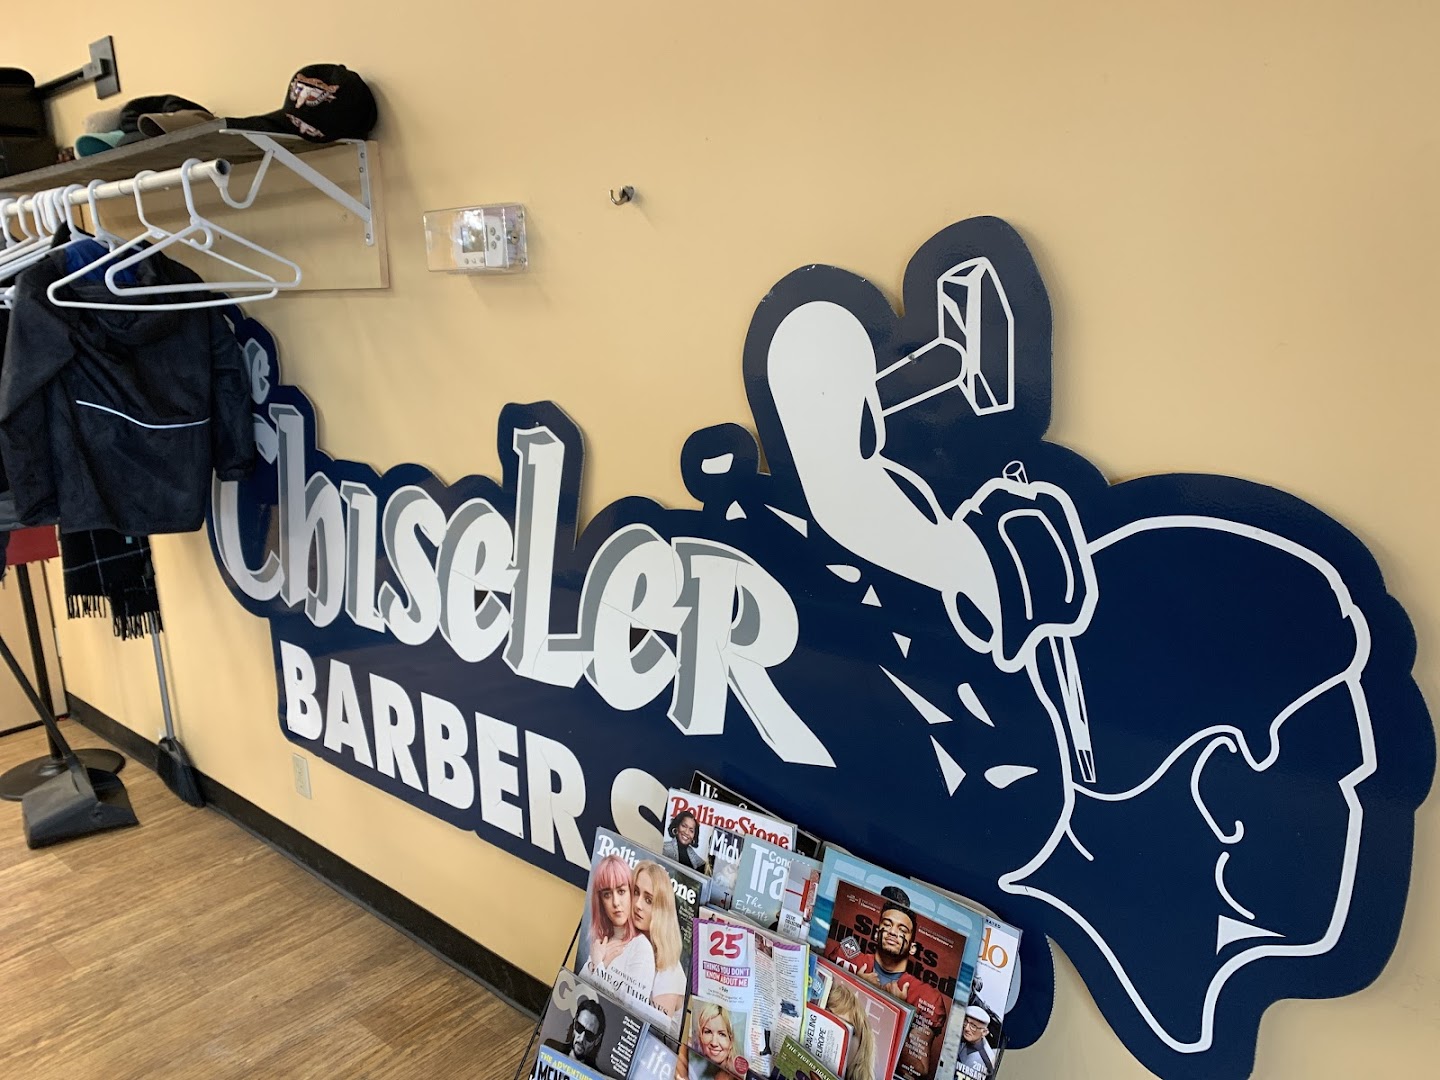 The Chiseler Barber Shop